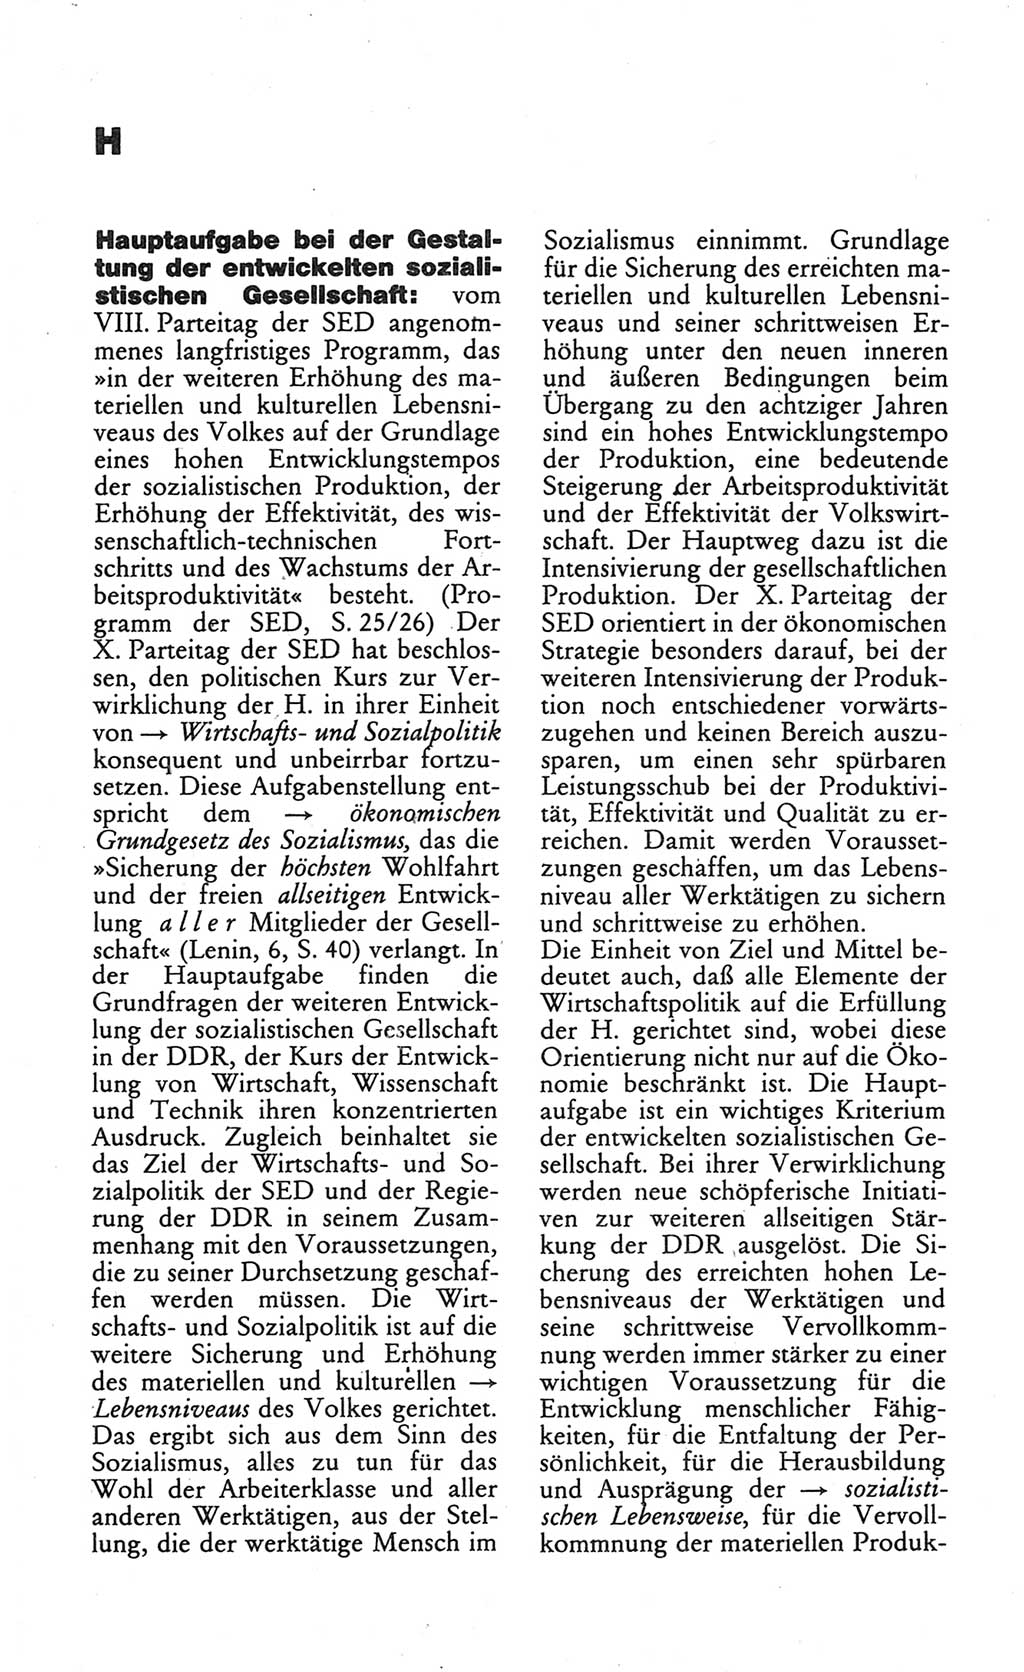 Wörterbuch des wissenschaftlichen Kommunismus [Deutsche Demokratische Republik (DDR)] 1984, Seite 152 (Wb. wiss. Komm. DDR 1984, S. 152)